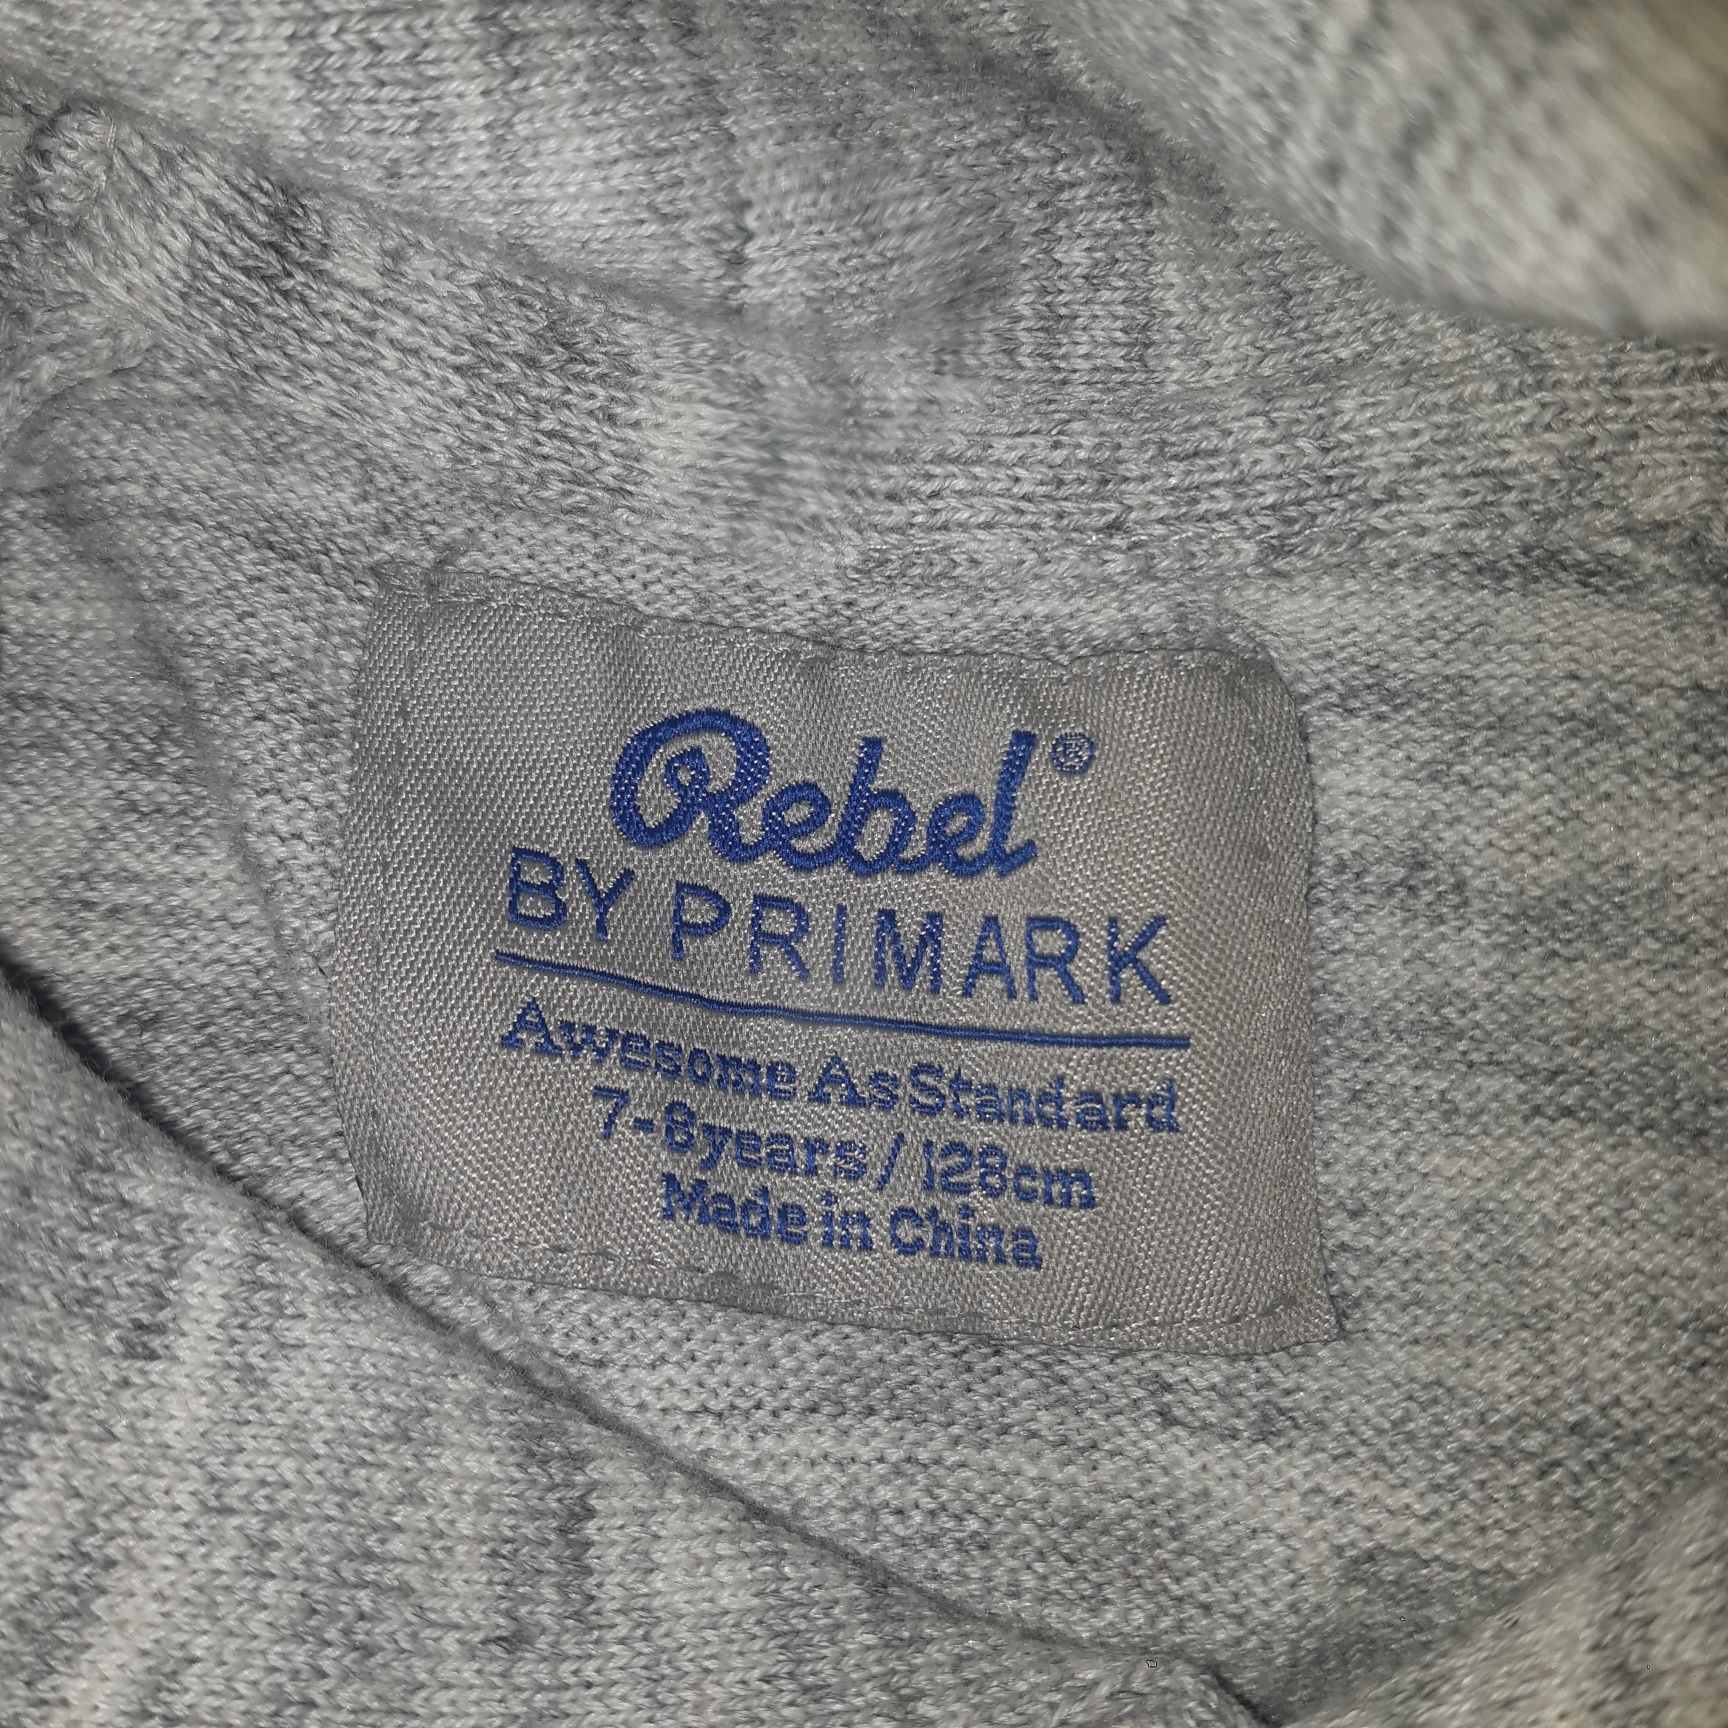 Sweterek Rebel rozmiar 128 
Stan bardzo dobry,  miły w dotyku